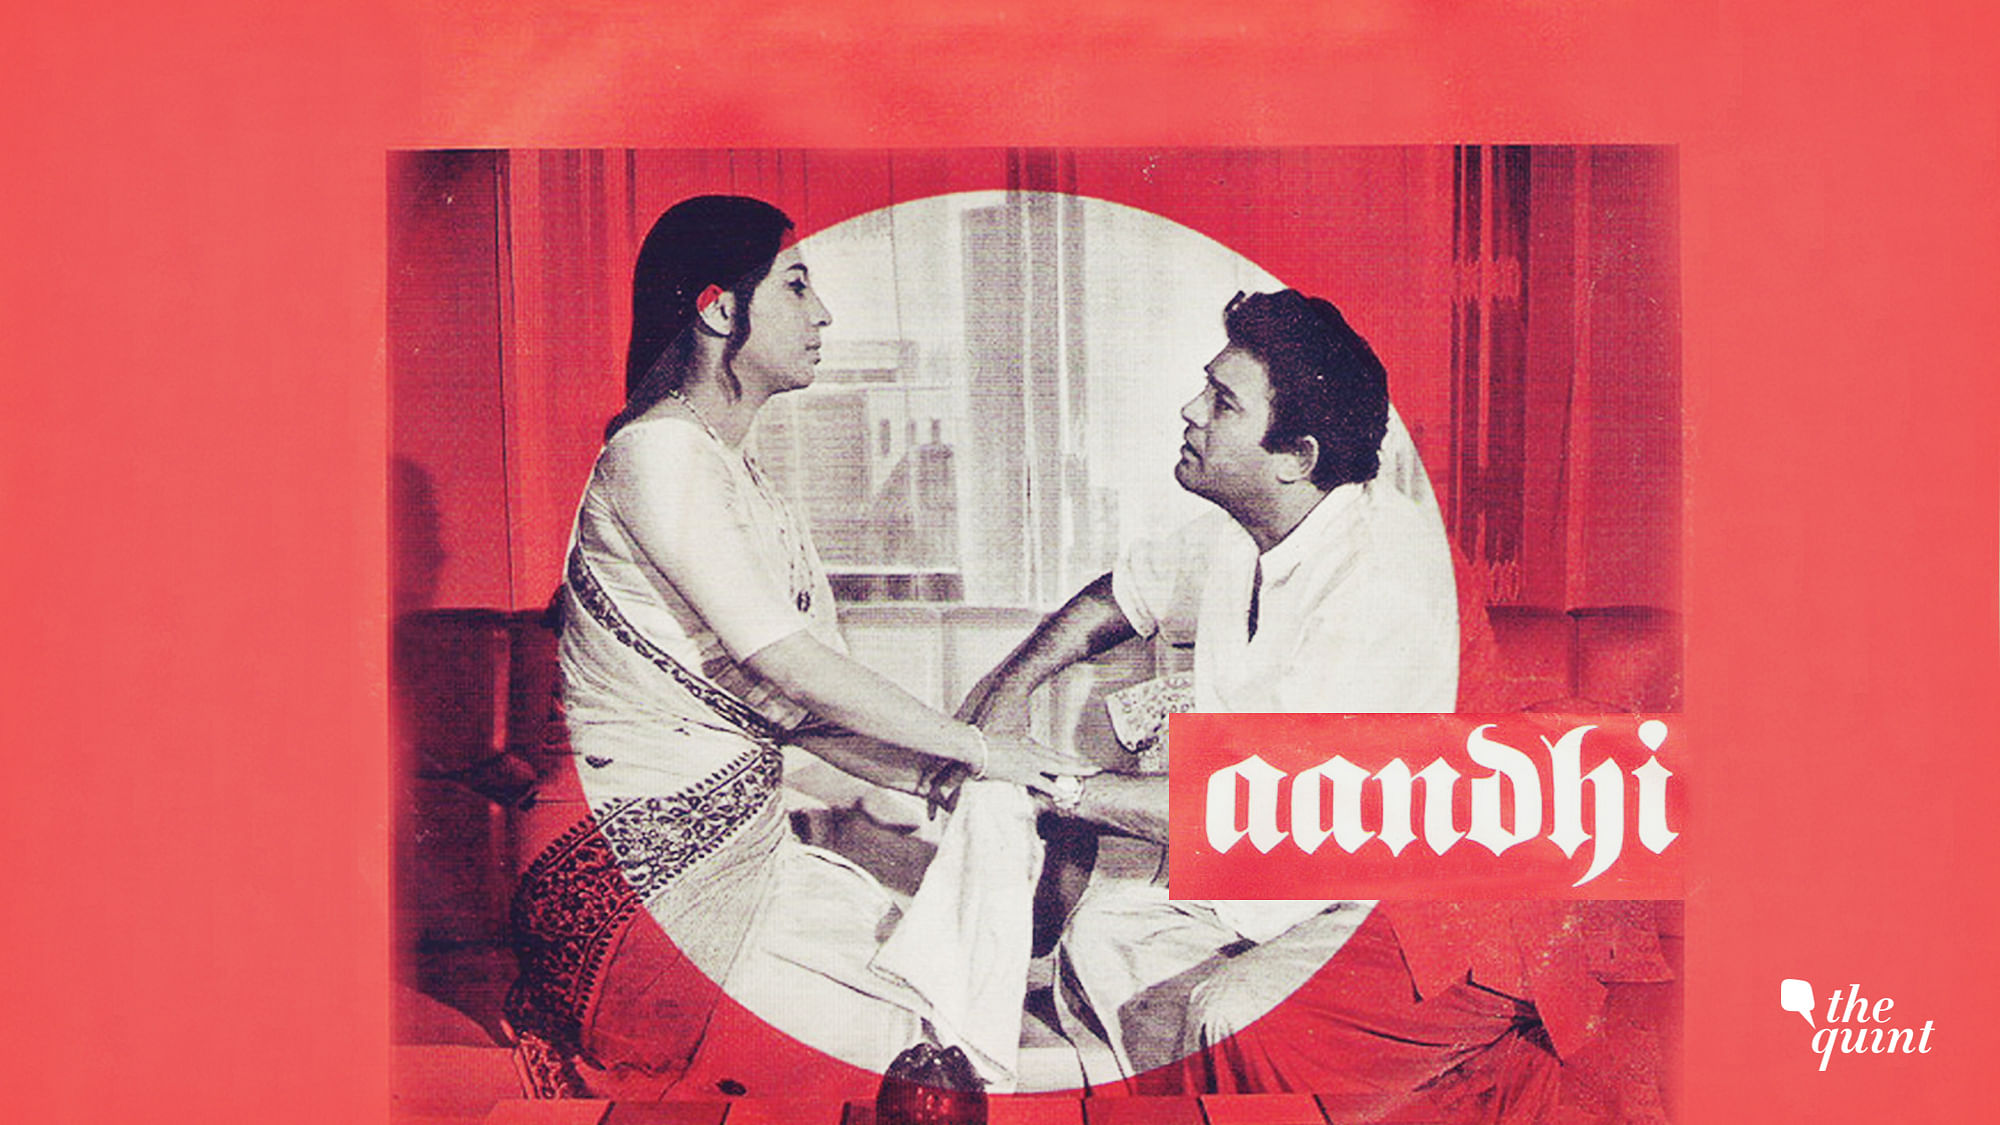 Aandhi (1975) poster used for representational purposes.